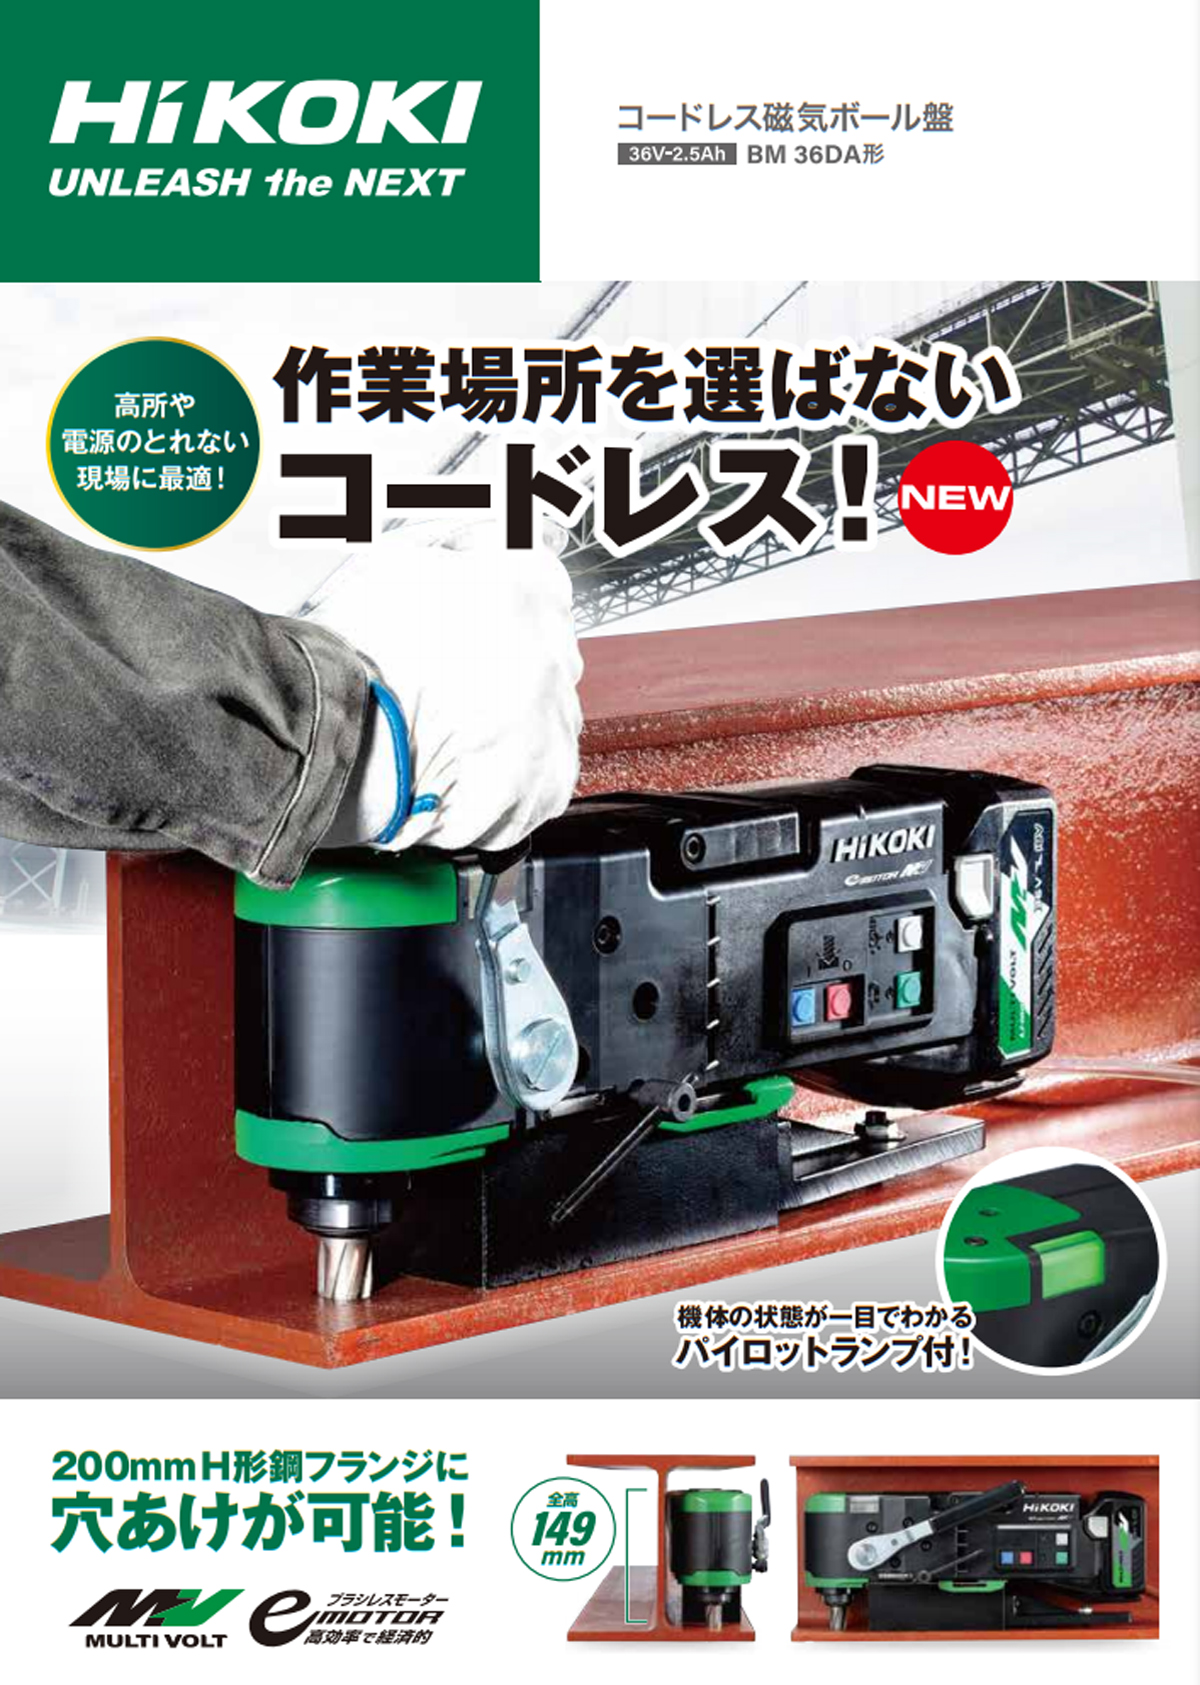 4個まで郵便OK HiKOKI HiKOKI BM36DA(2XP) コードレス磁気ボール盤 36V-2.5Ah(電池2個・充電器・ケース付) 